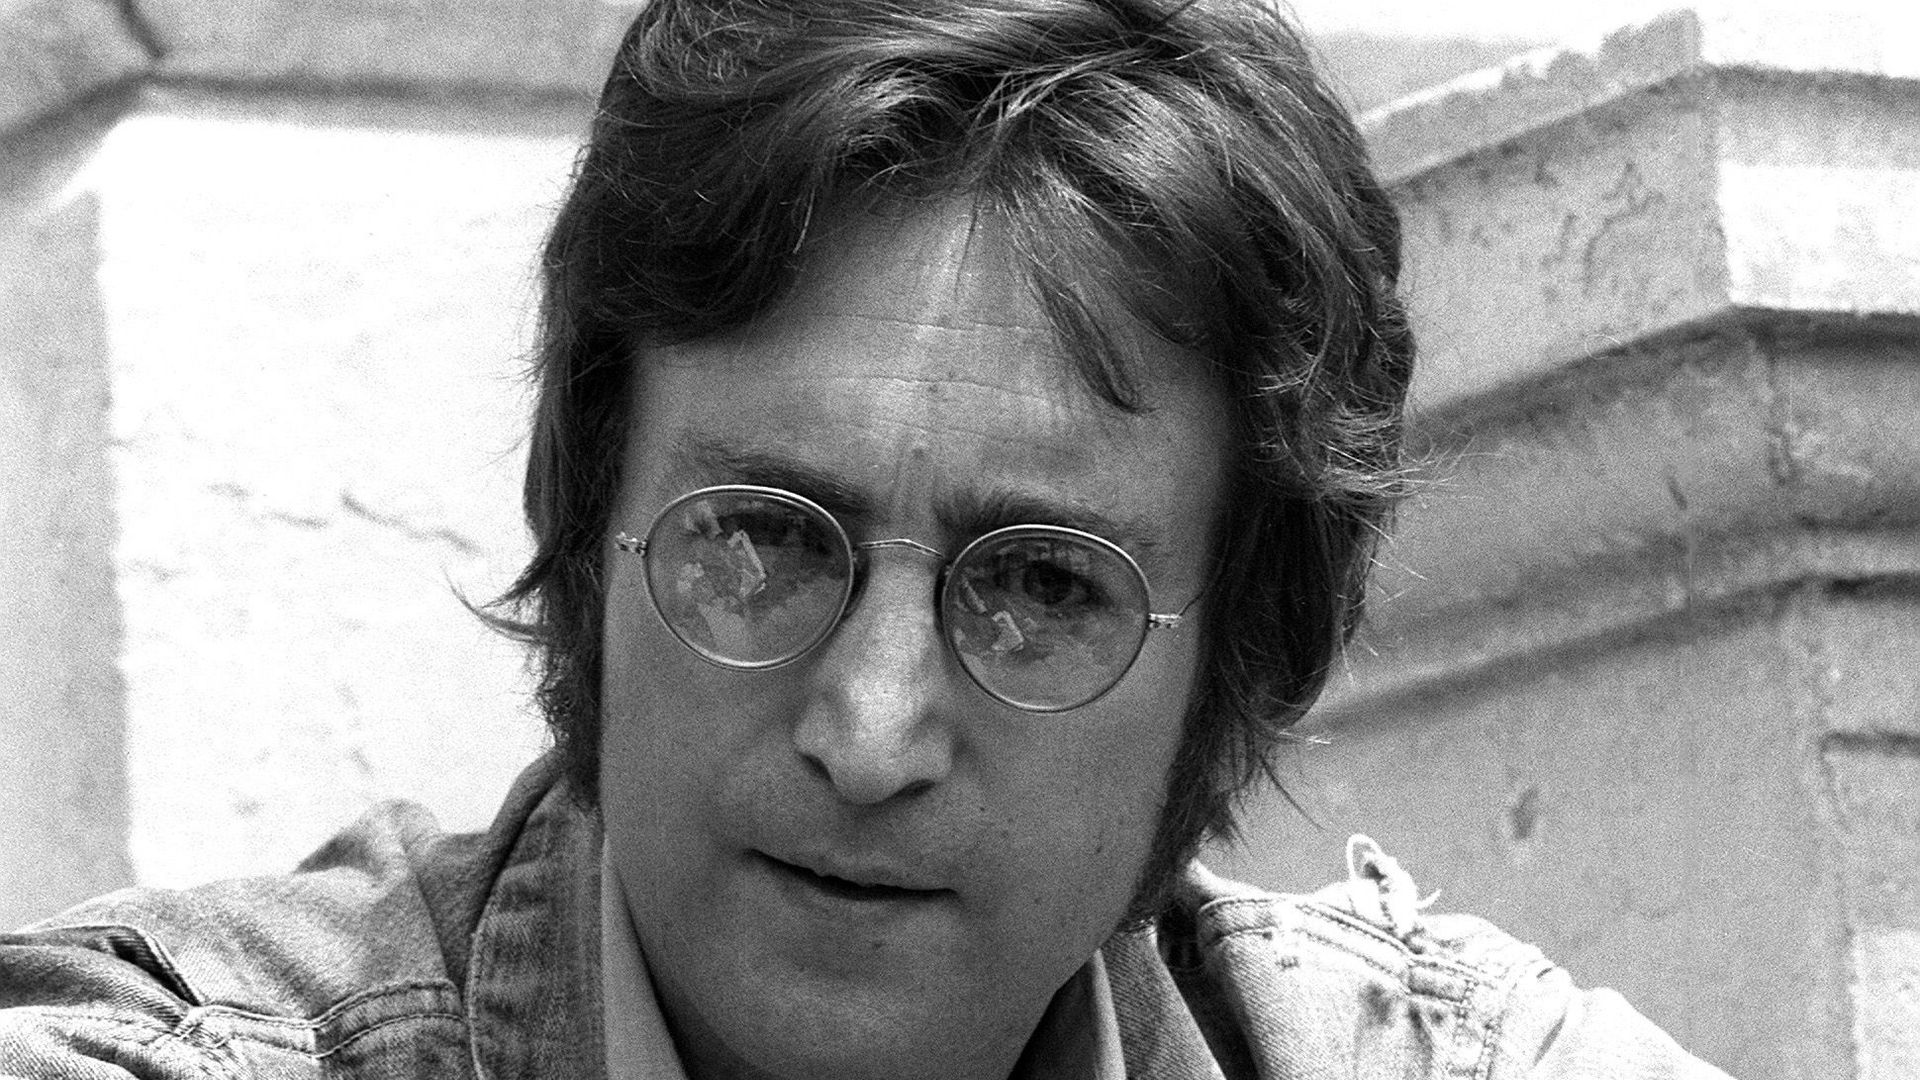 Un symbole de la paix géant pour marquer le 75e anniversaire de John Lennon